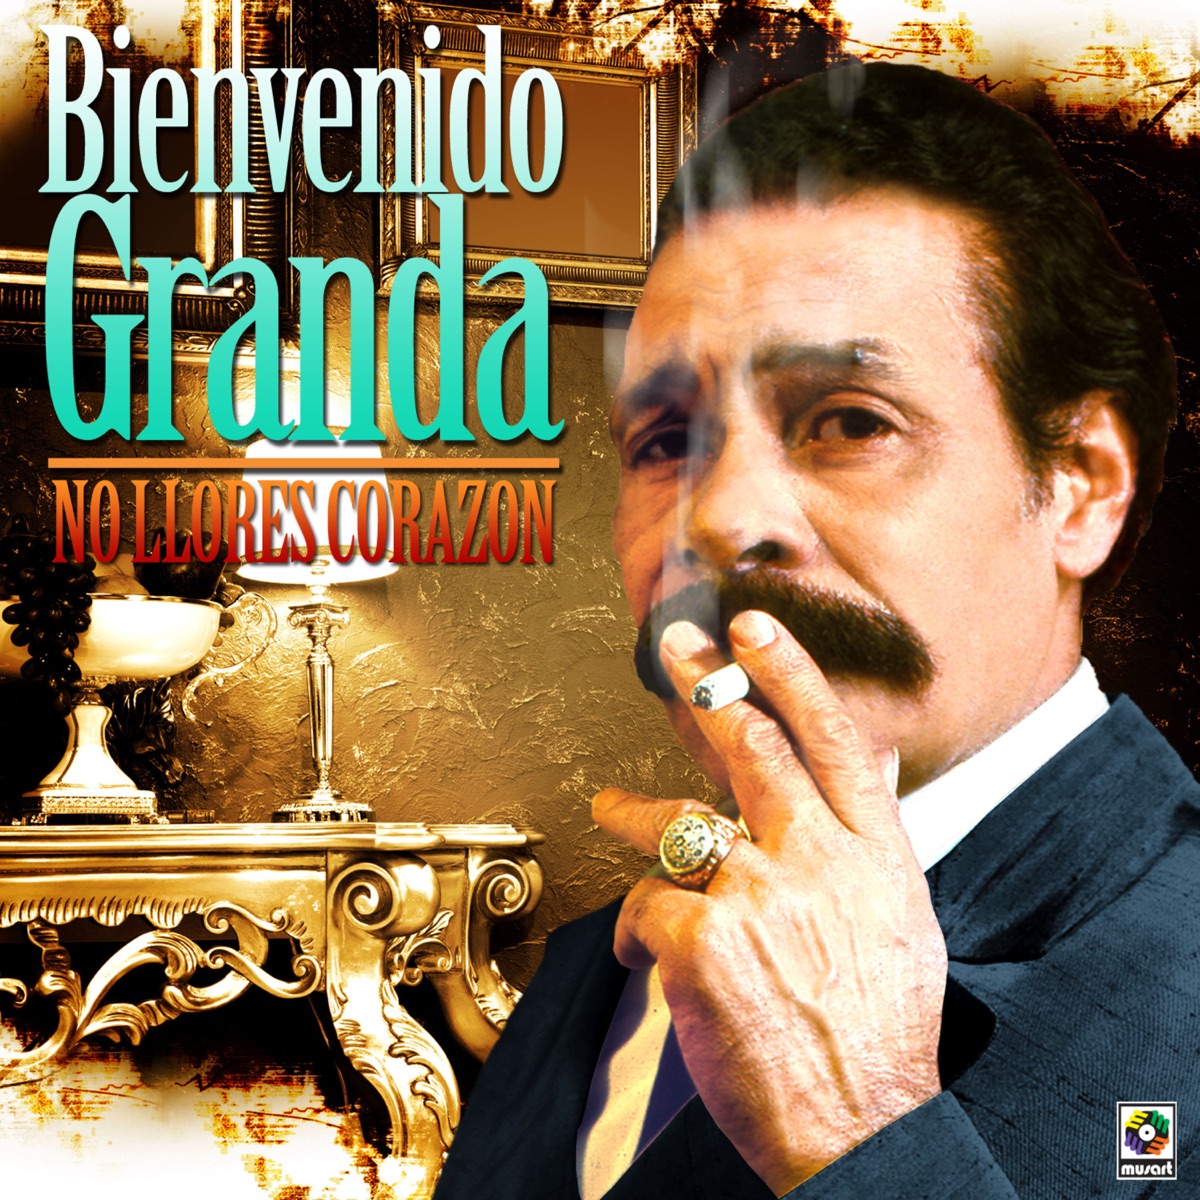 Stream Bienvenido Granda  Listen to 20 Súper Éxitos, Volumen 1 playlist  online for free on SoundCloud